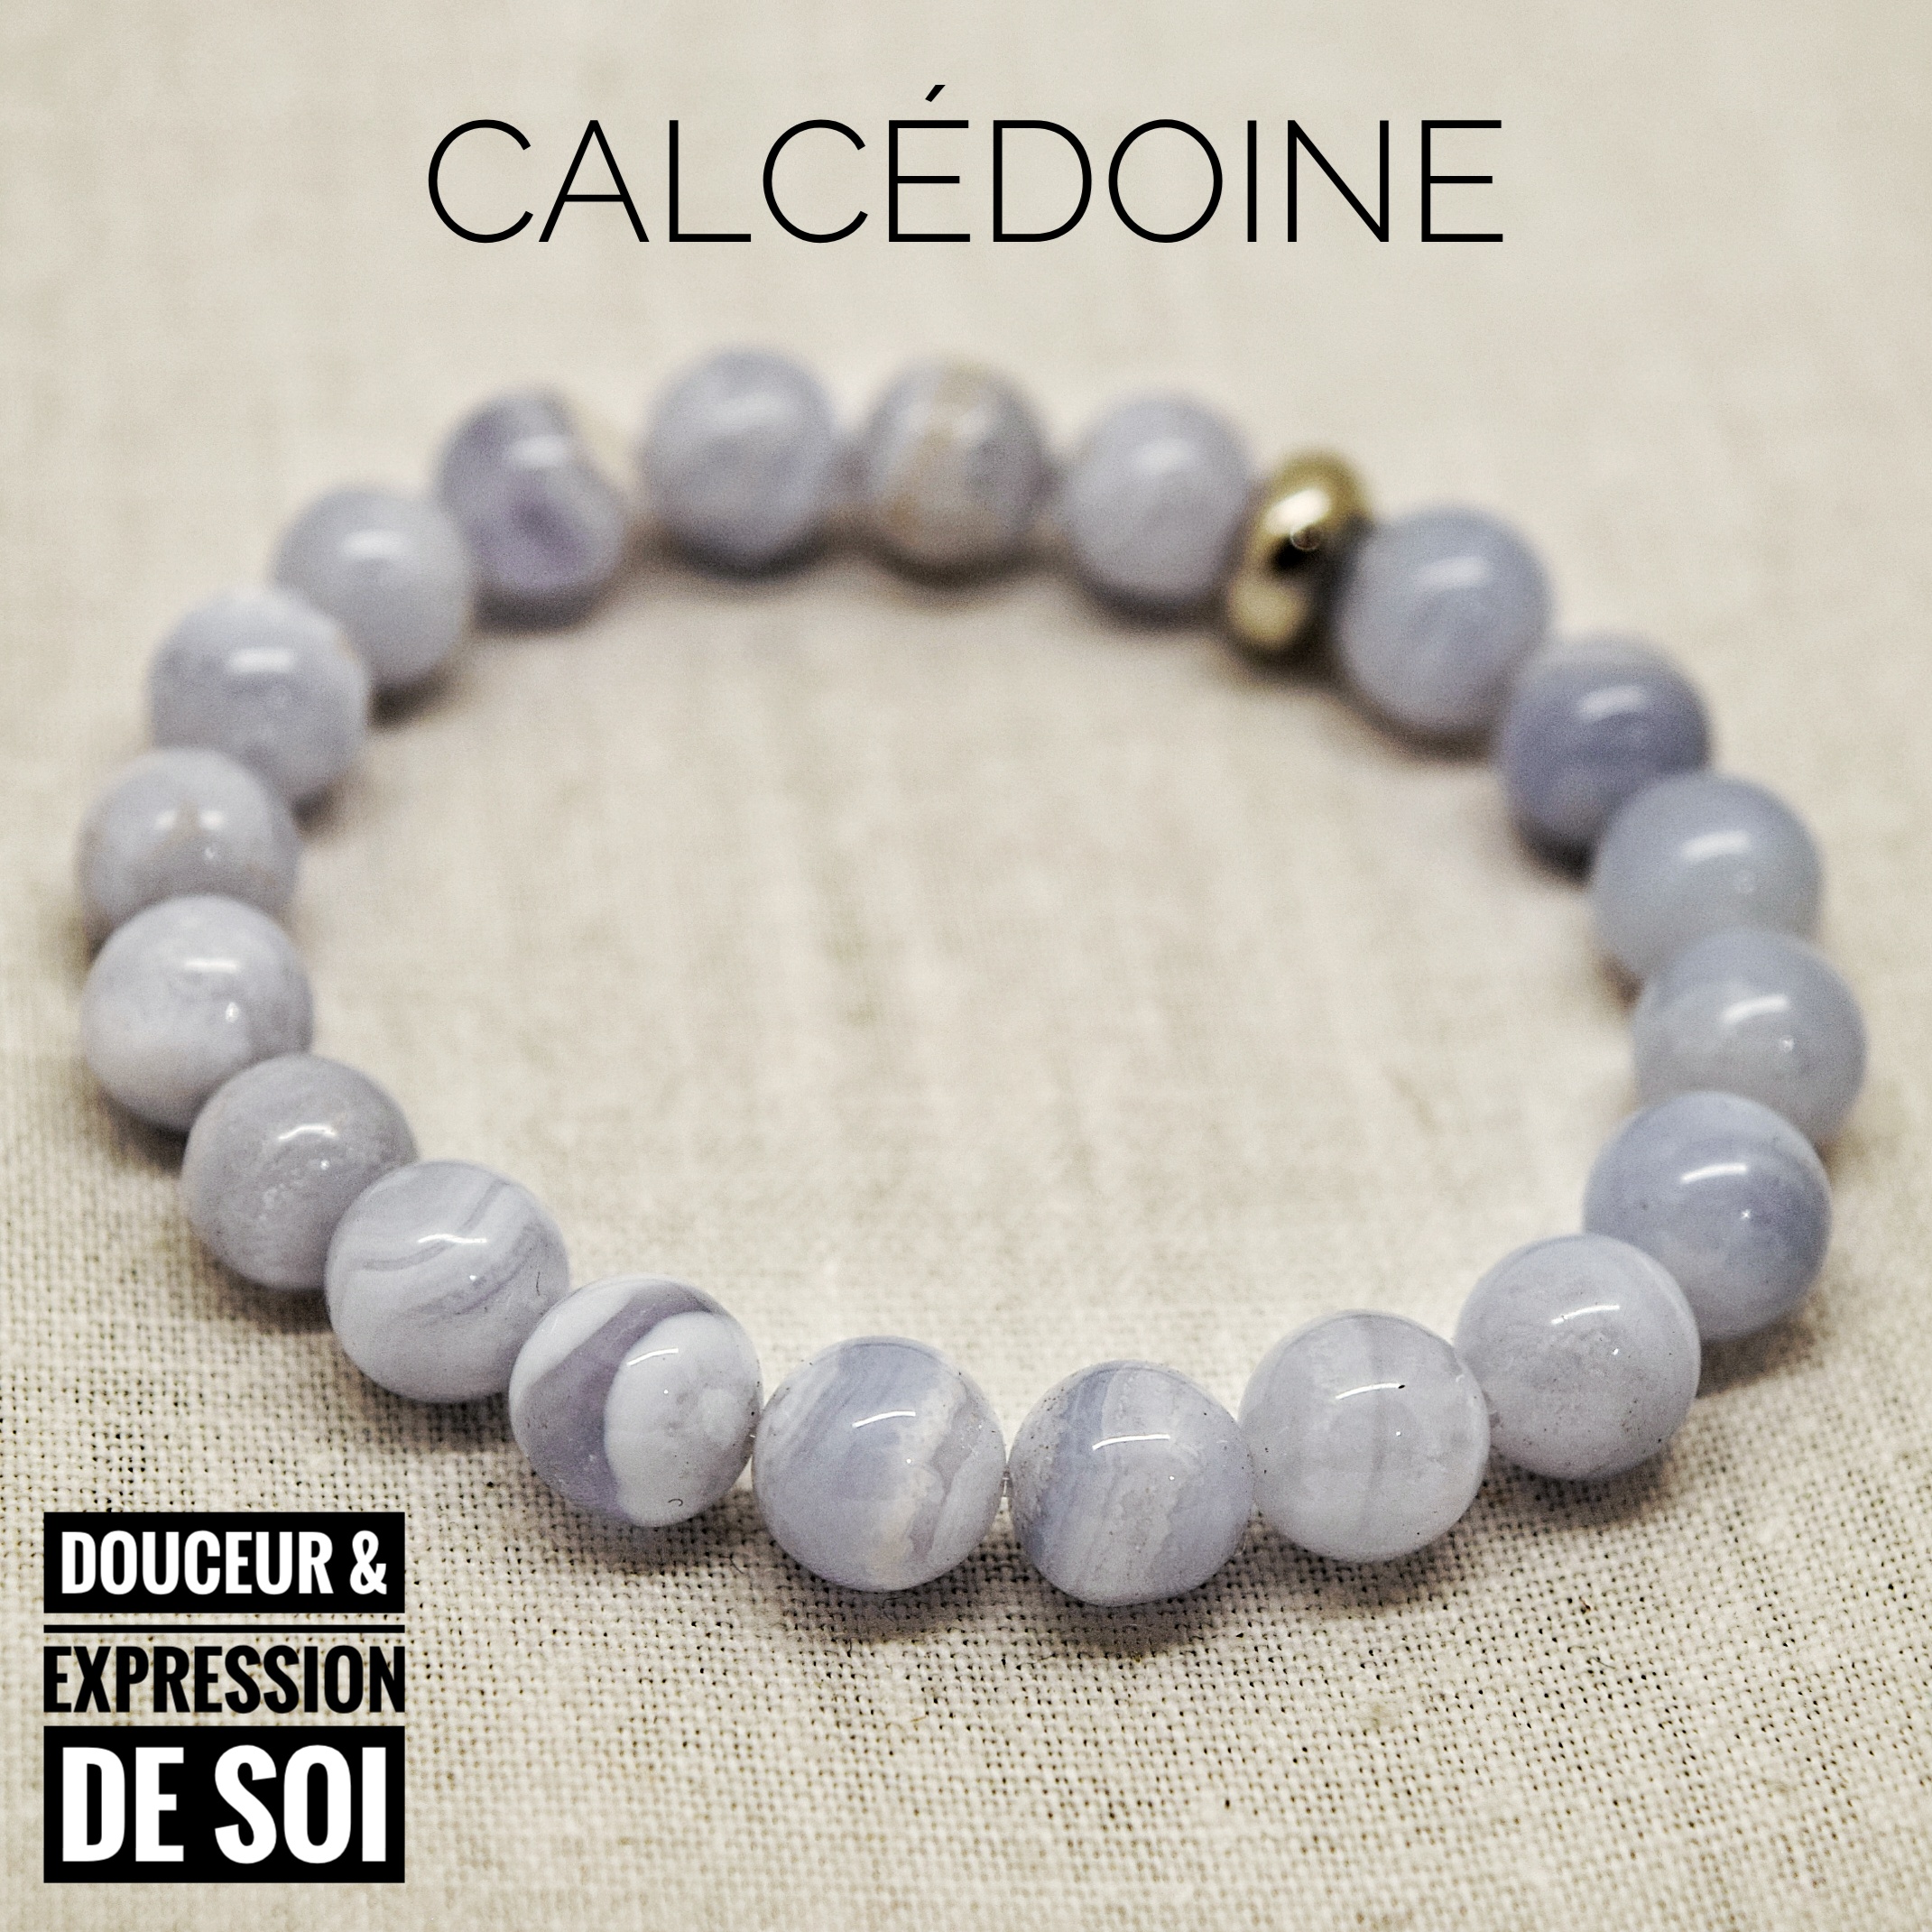 Bracelet Douceur & Expression de soi en Calcédoine